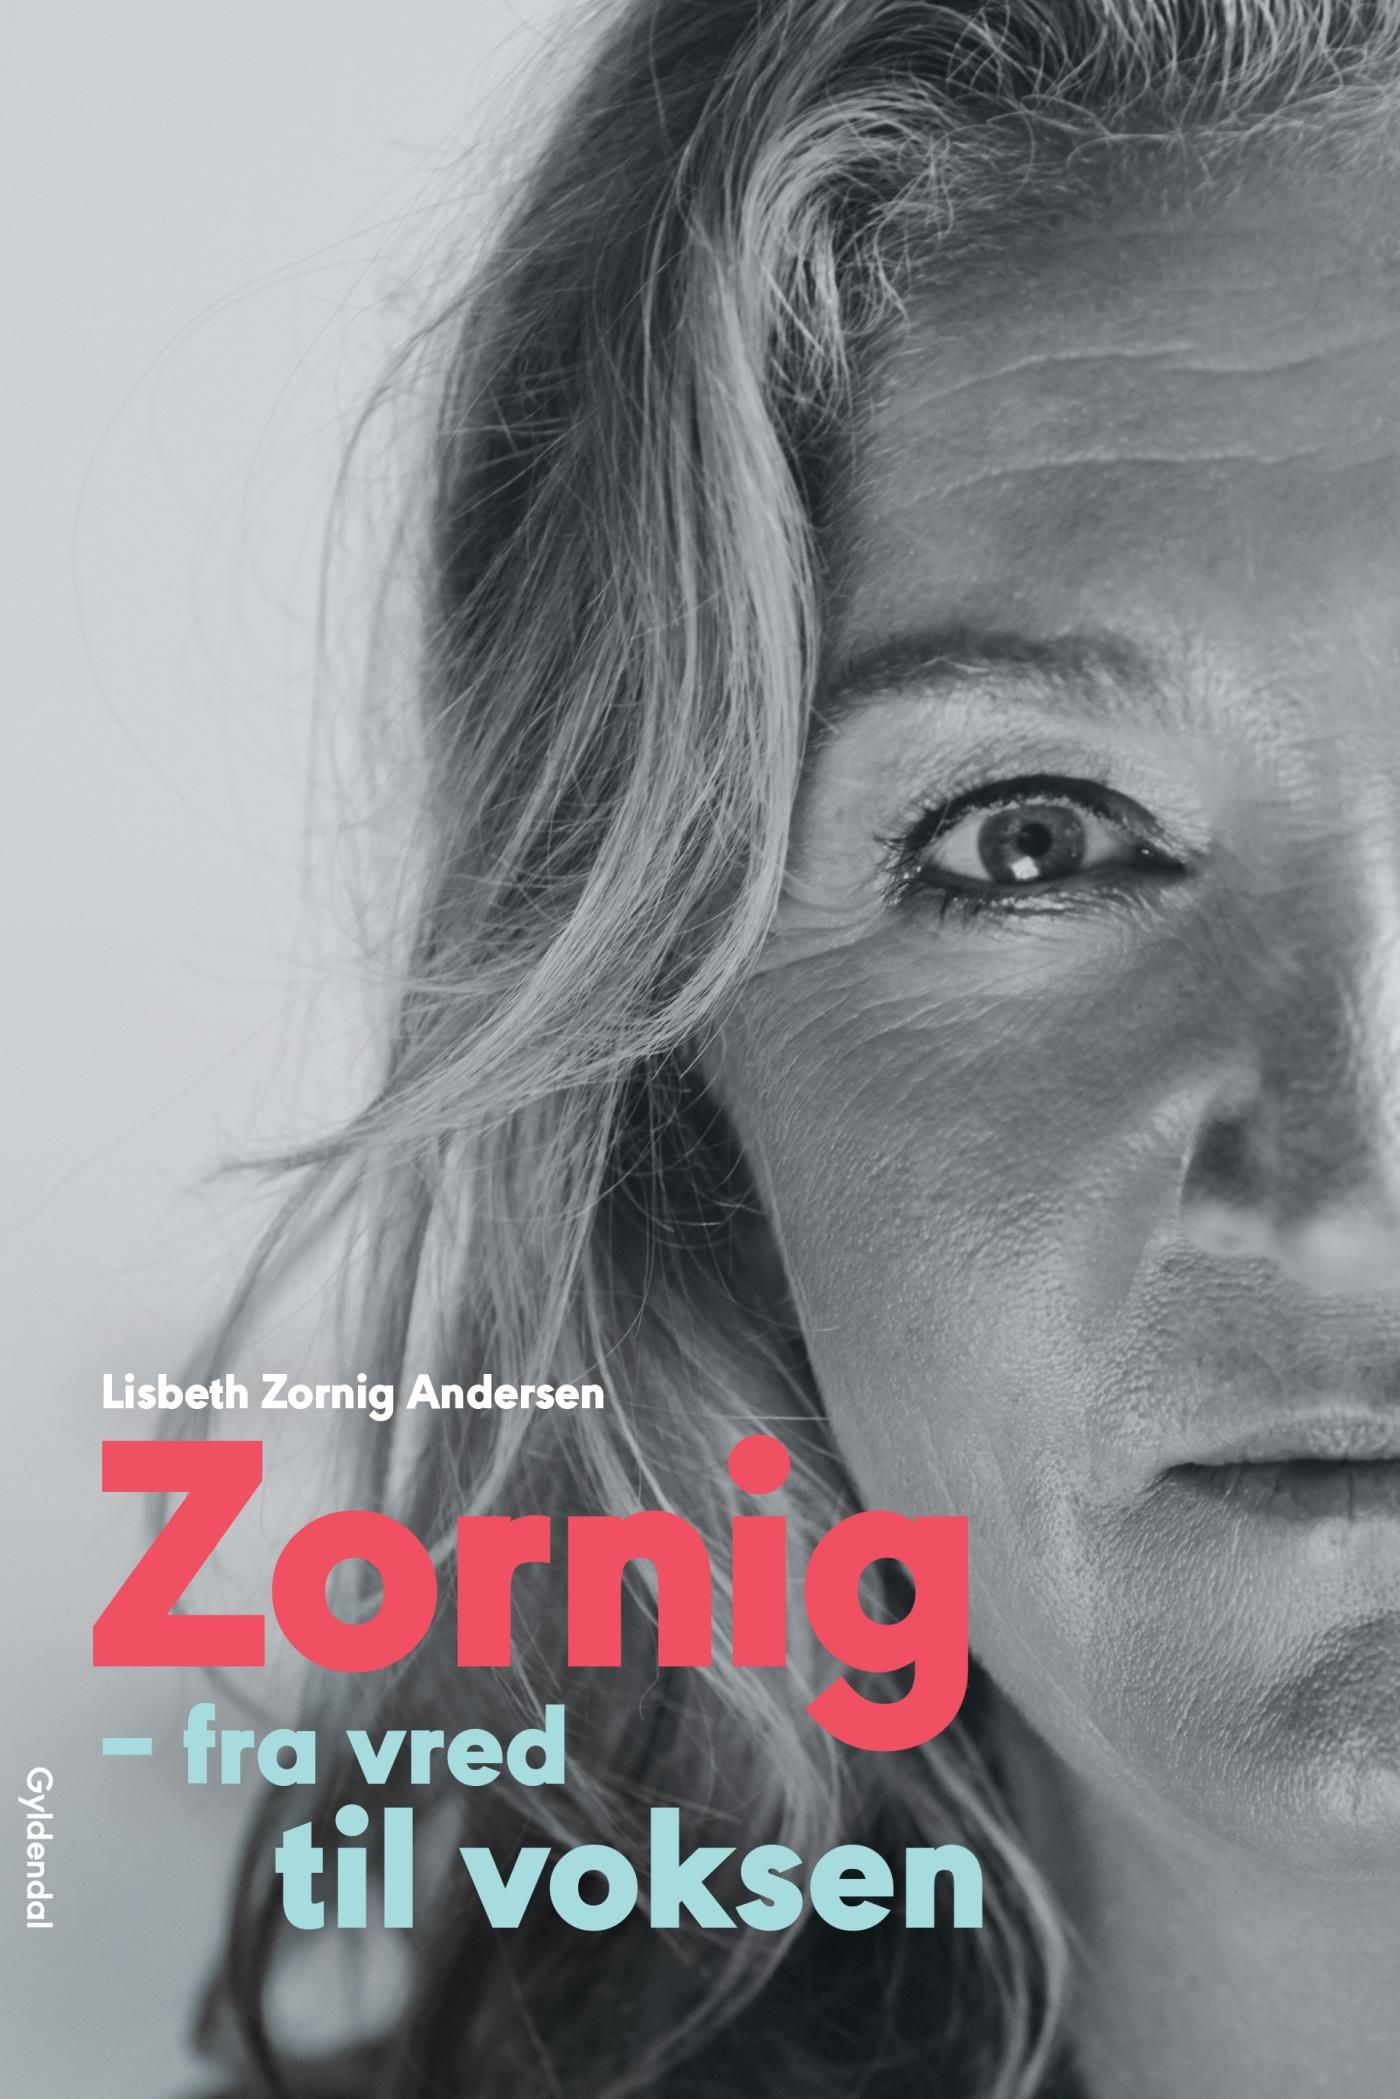 Zornig, e-bog af Lisbeth Zornig Andersen